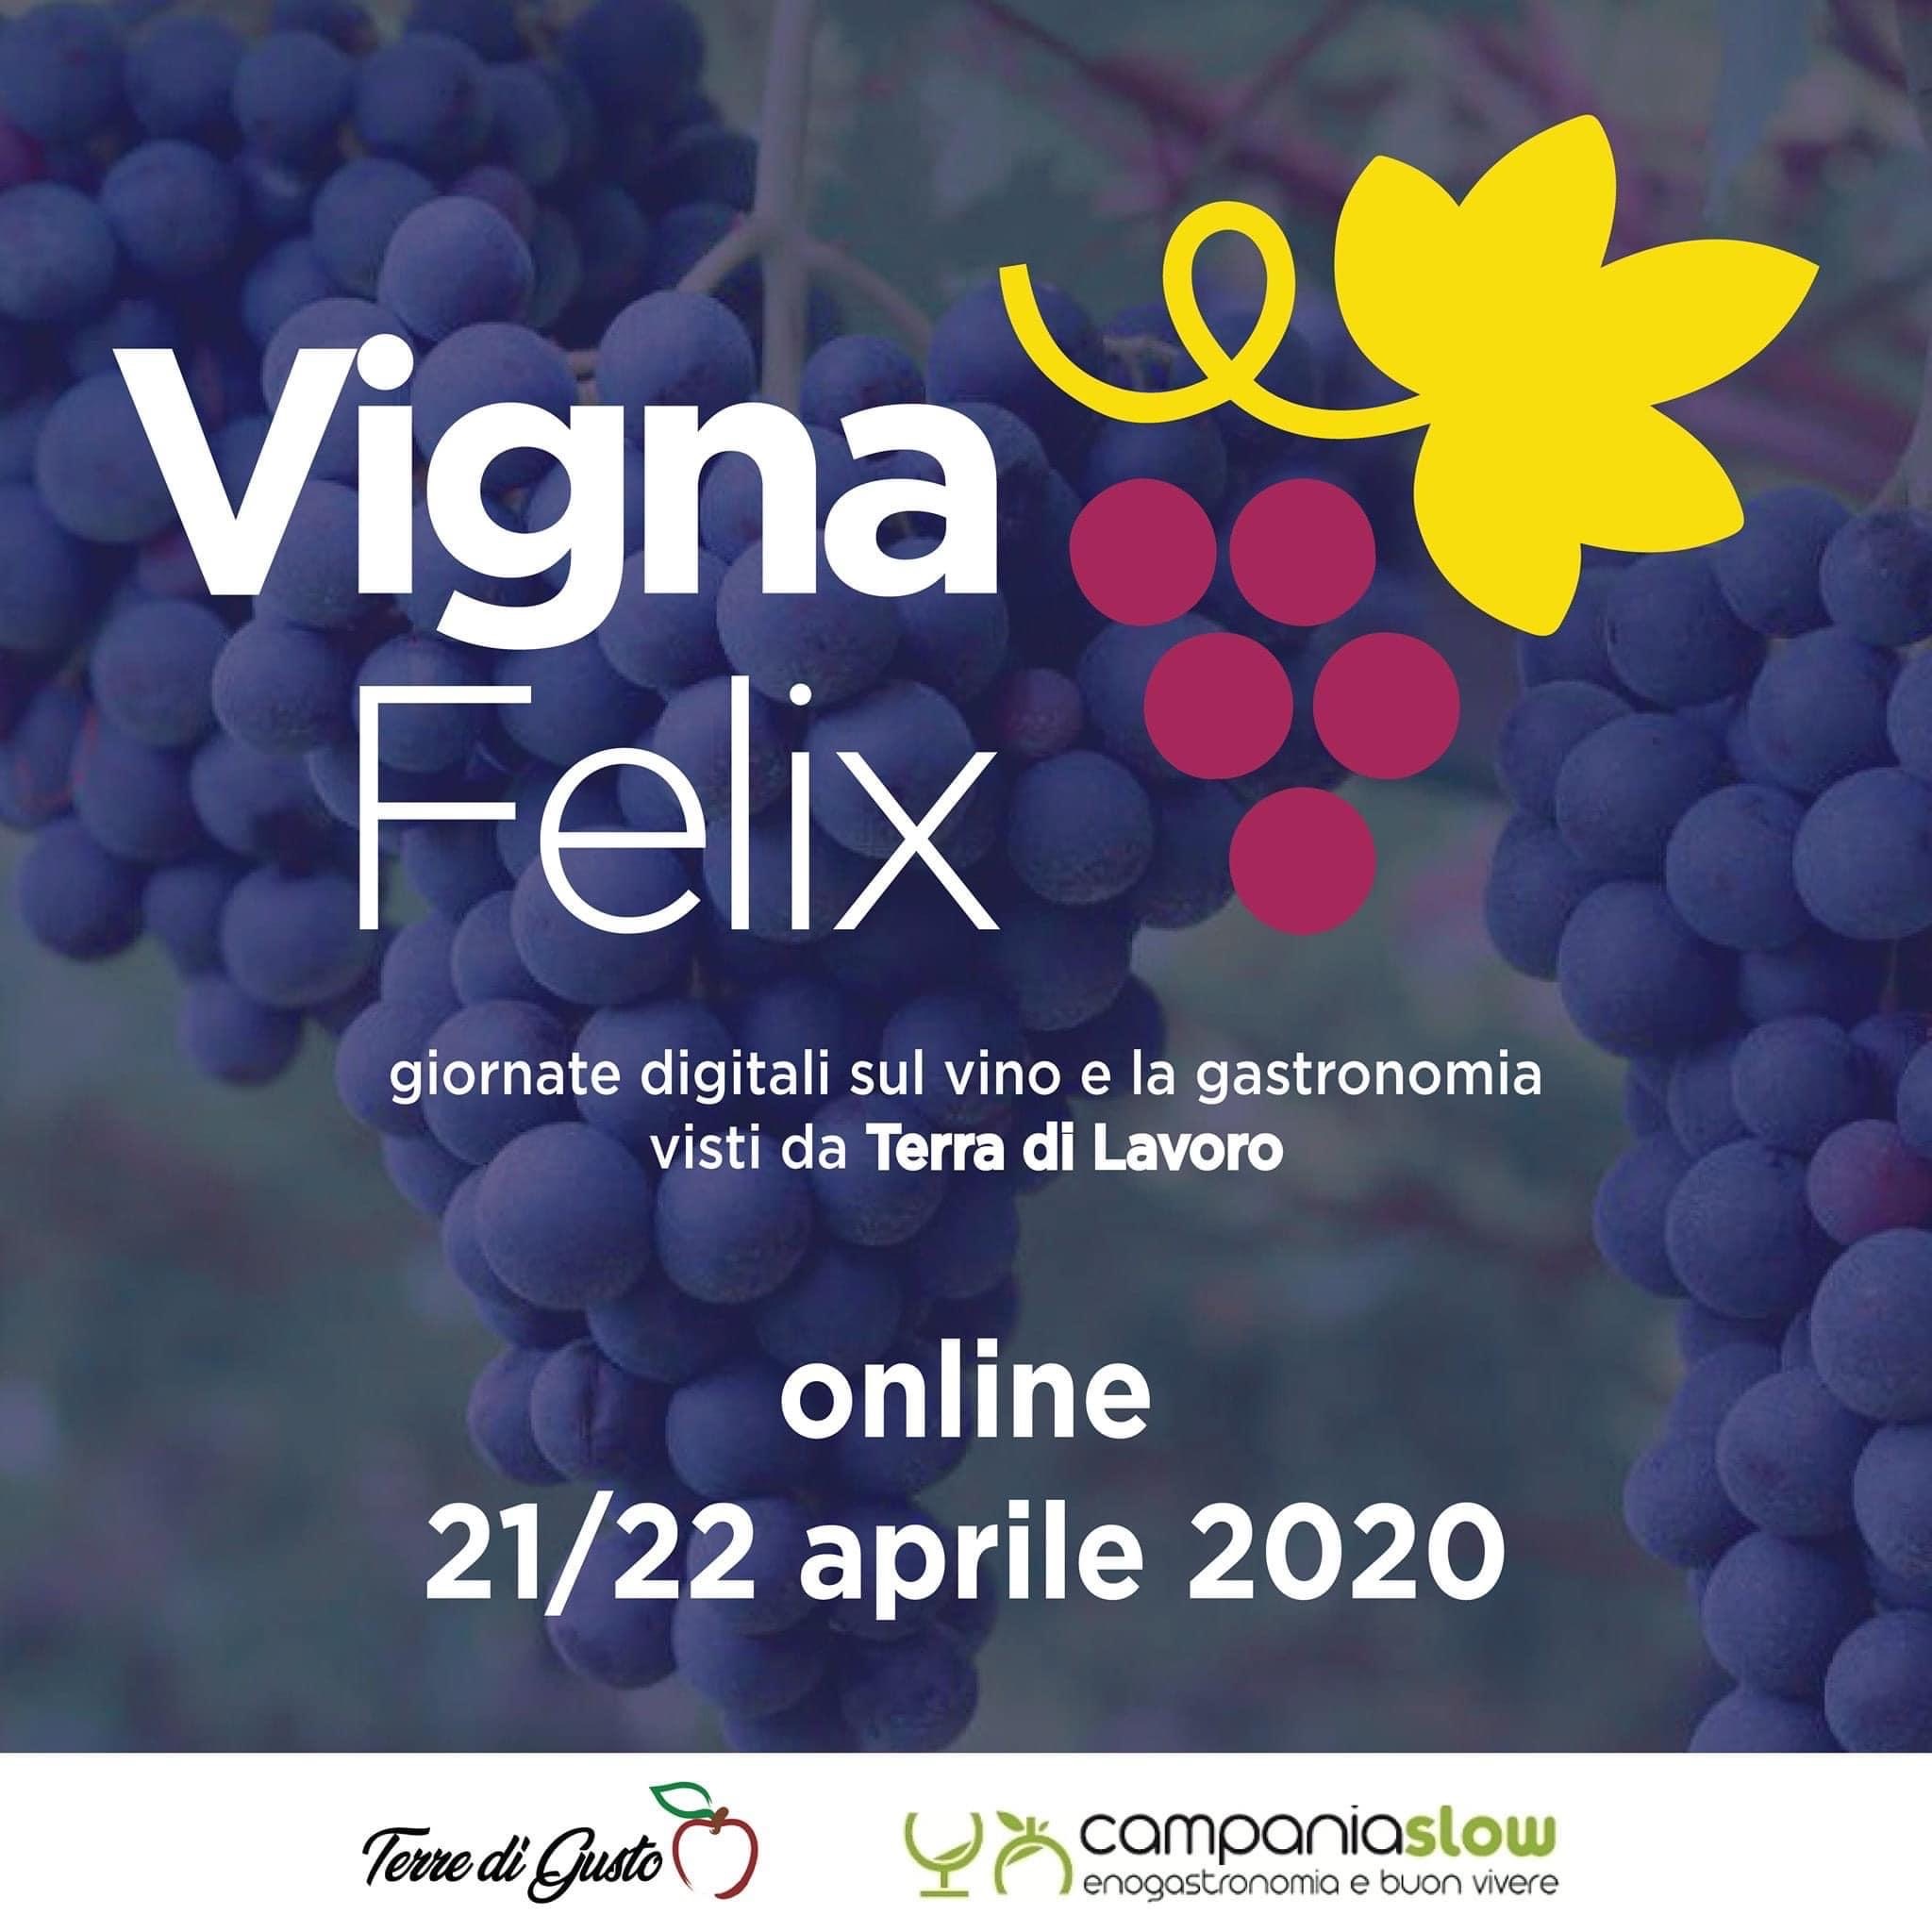 Domani Vignafelix, discutere di Vino, ristorazione, turismo enogastronomico al tempo di Covid